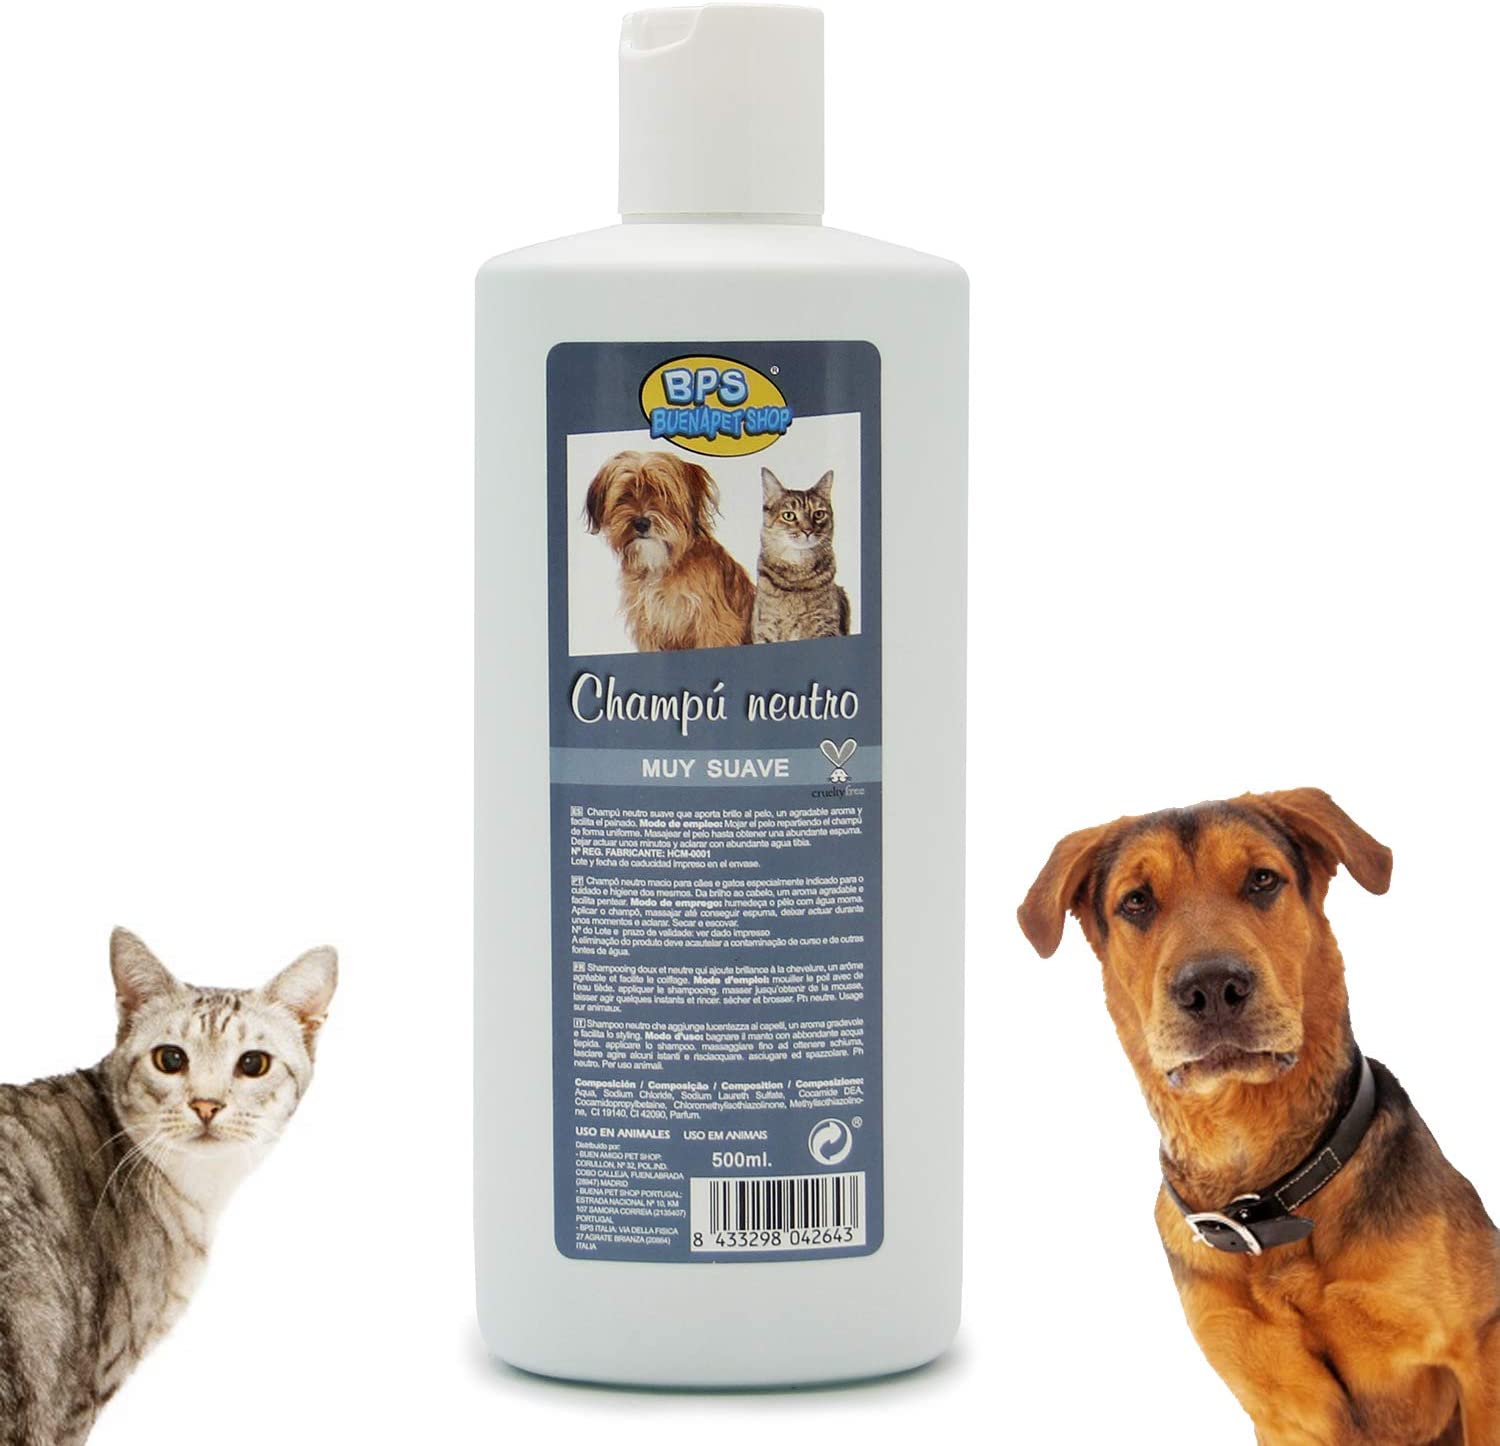  BPS Champú Neutro para Piel Delicada Shampoo para Perro Cachorro Animales Domésticos 500ml BPS-4264 